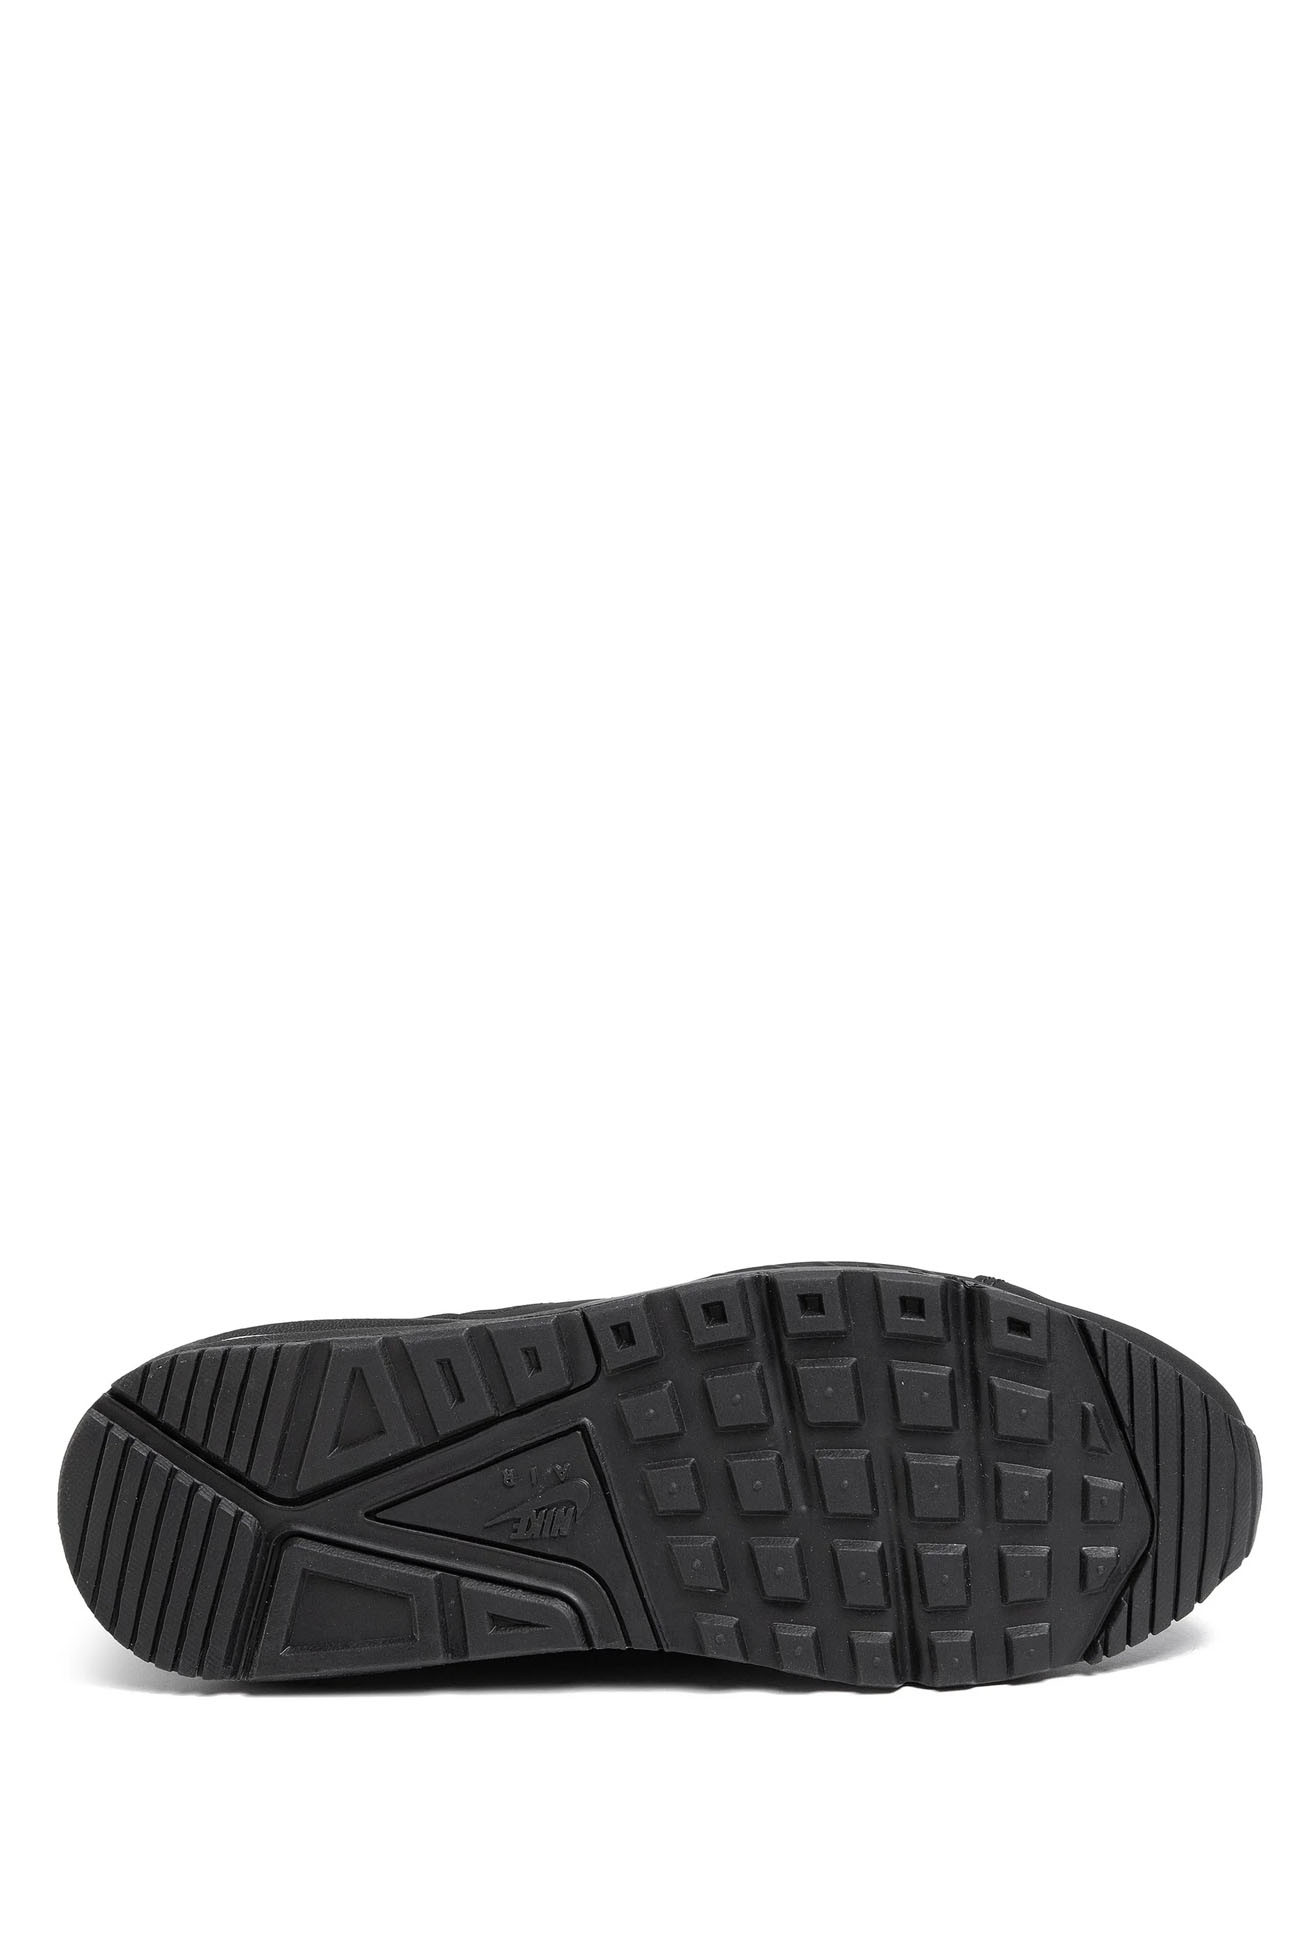 Кросівки чоловічі Nike Air Max IVO Leather Shoe чорні 580520-002 изображение 5